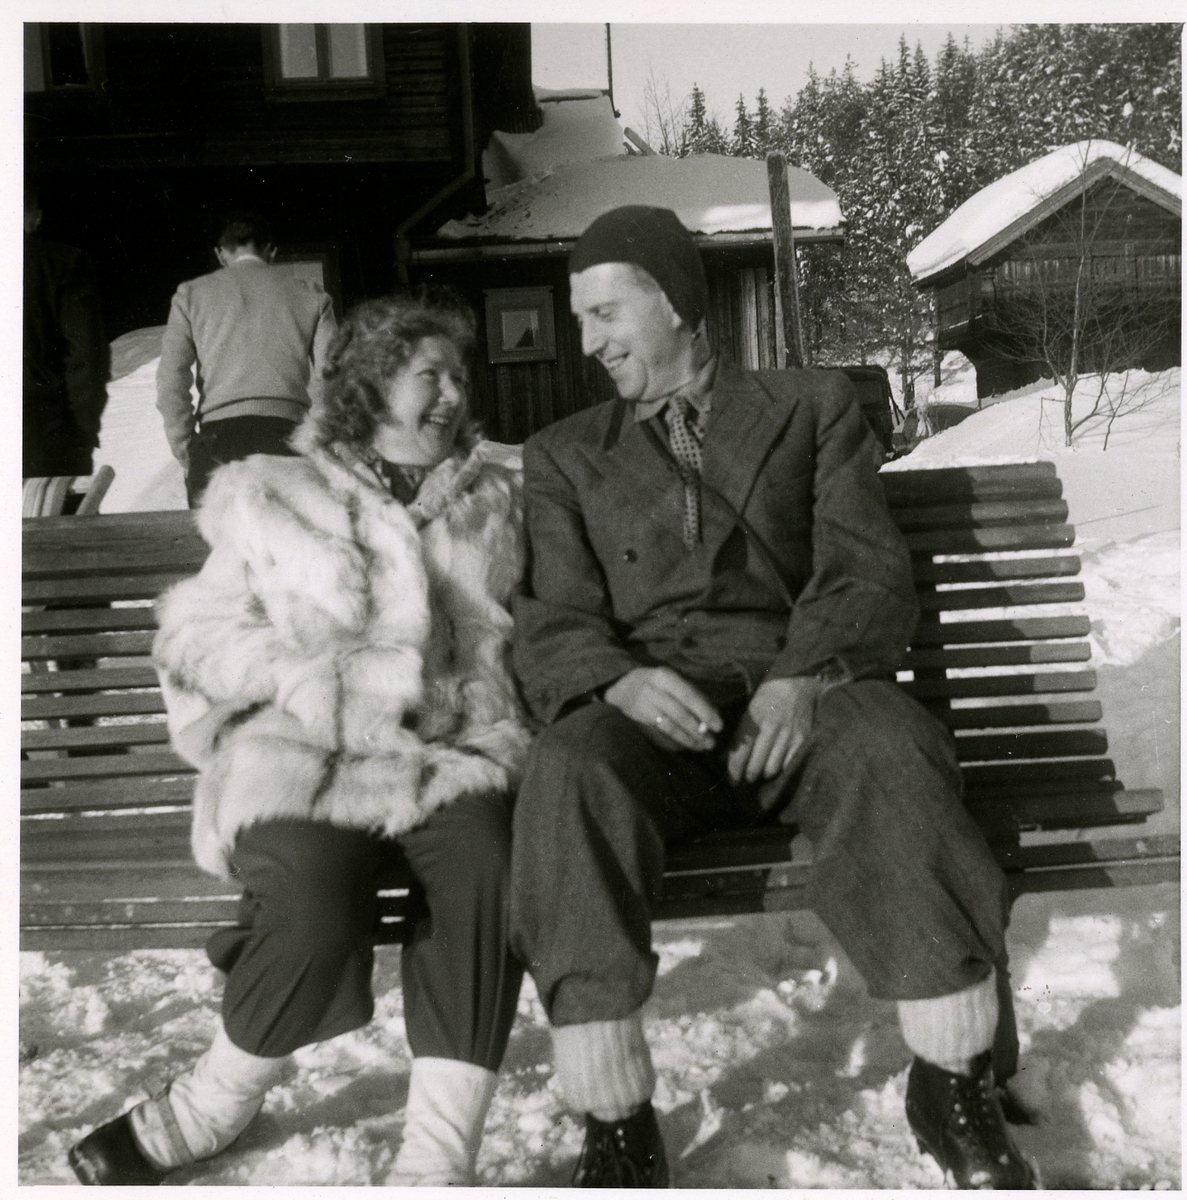 Én mann og én kvinne sitter på en benk i vinterlandskap. Usikker på hvem de er.